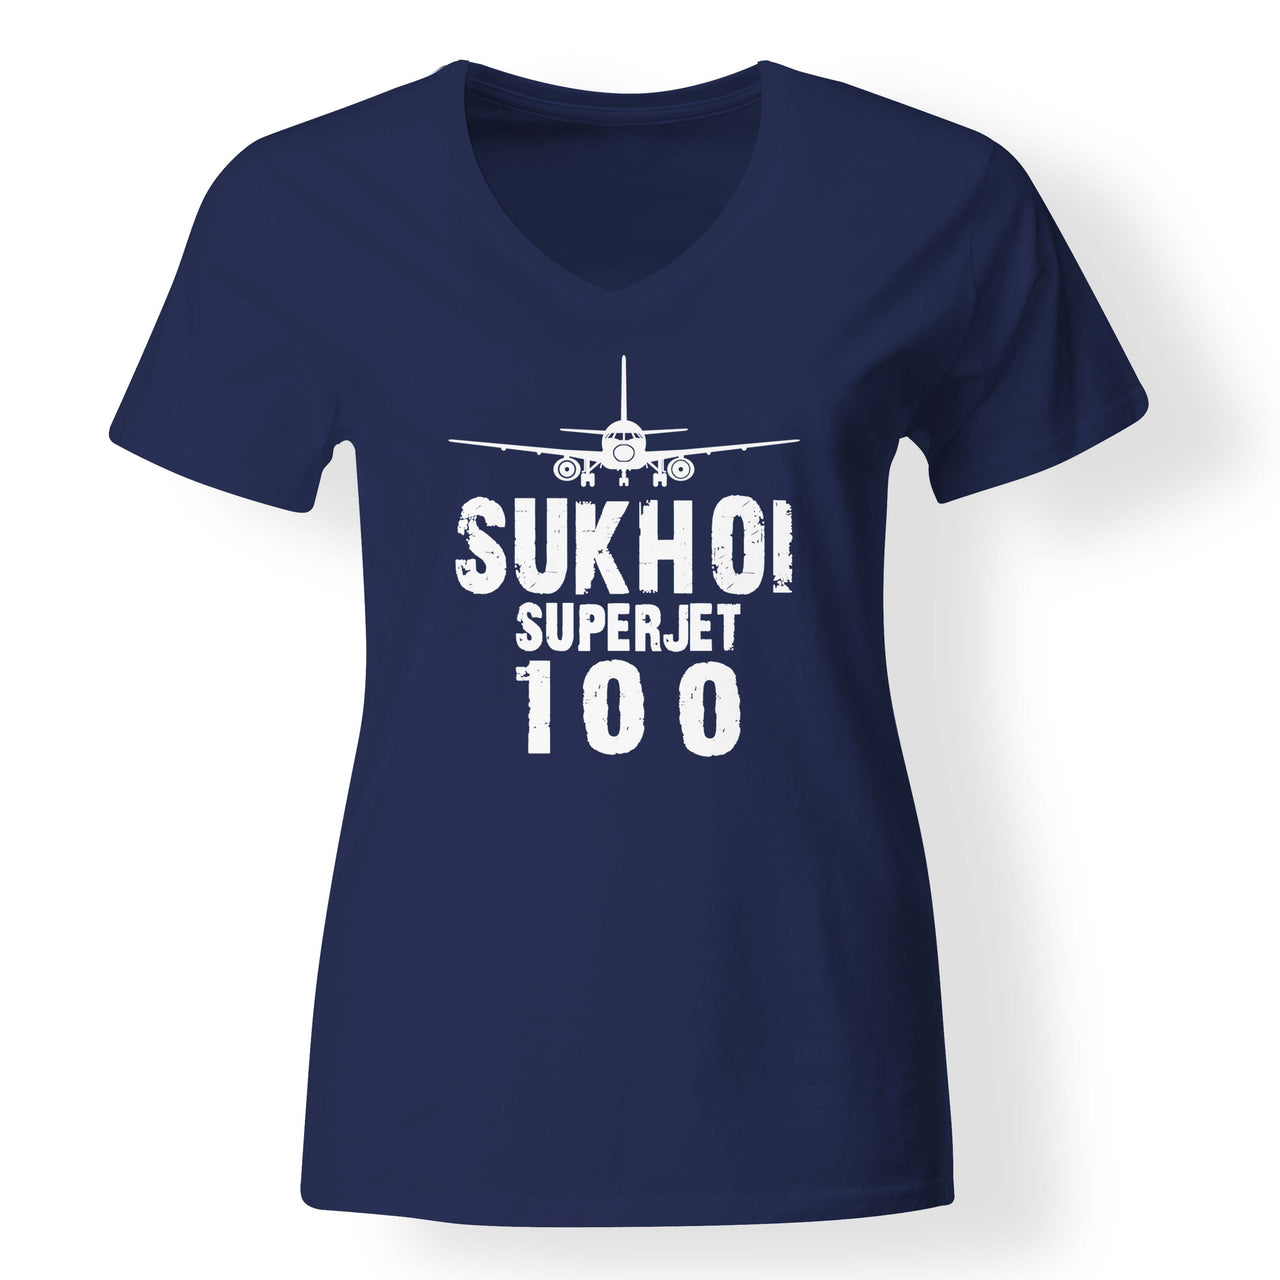 Sukhoi Superjet 100 & Plane Designed V-Neck T-Shirts